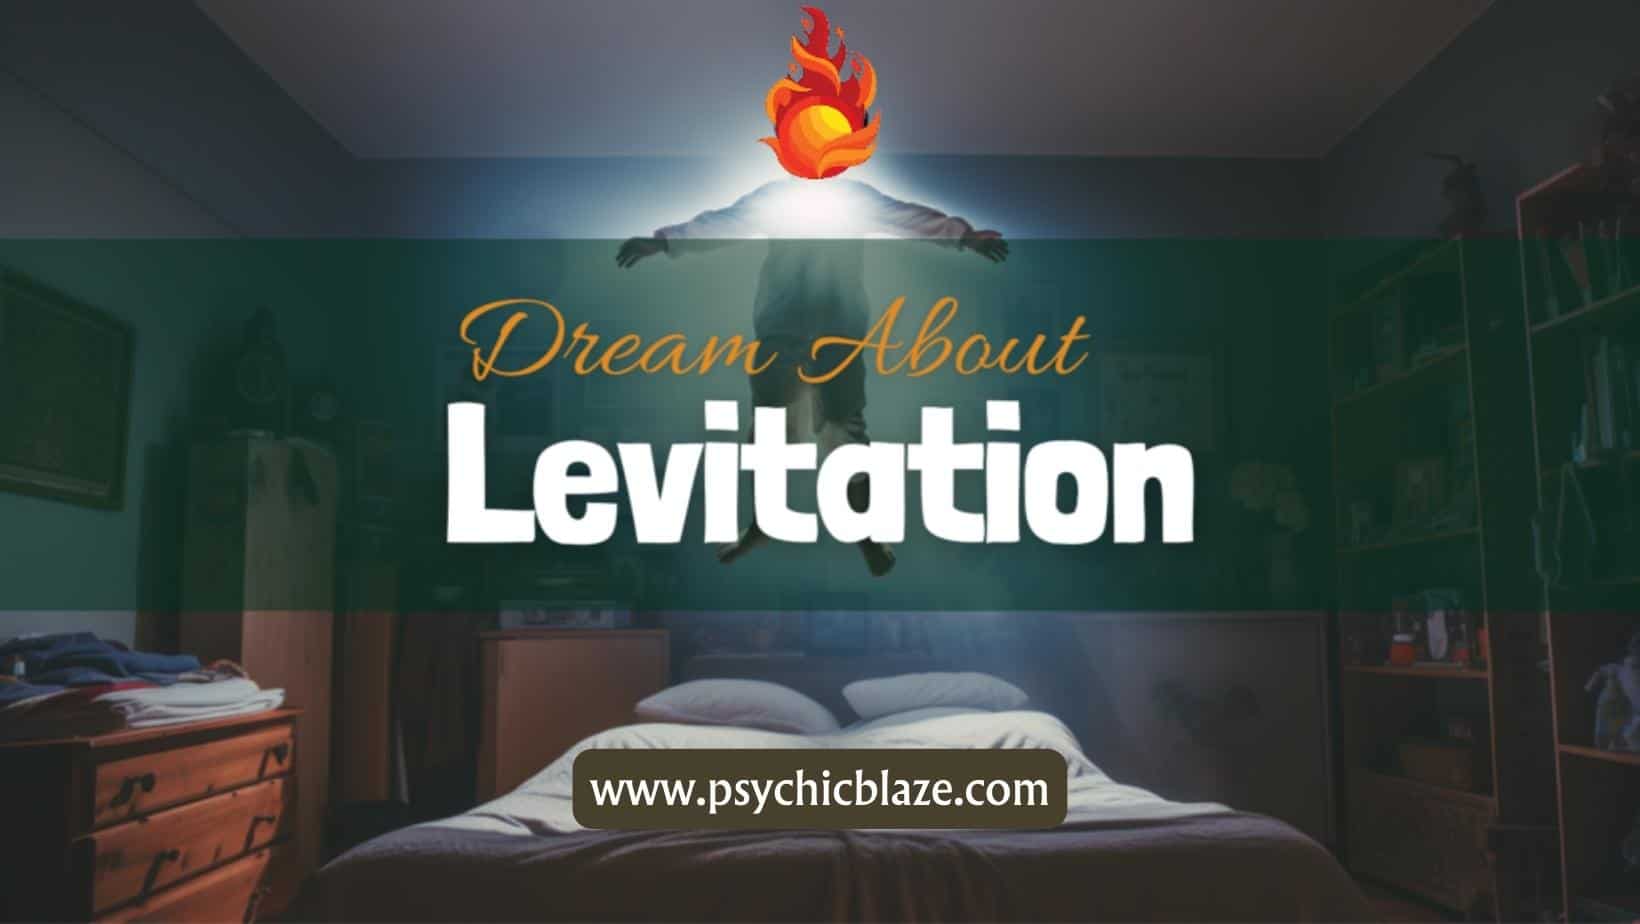 Dream about Levitation